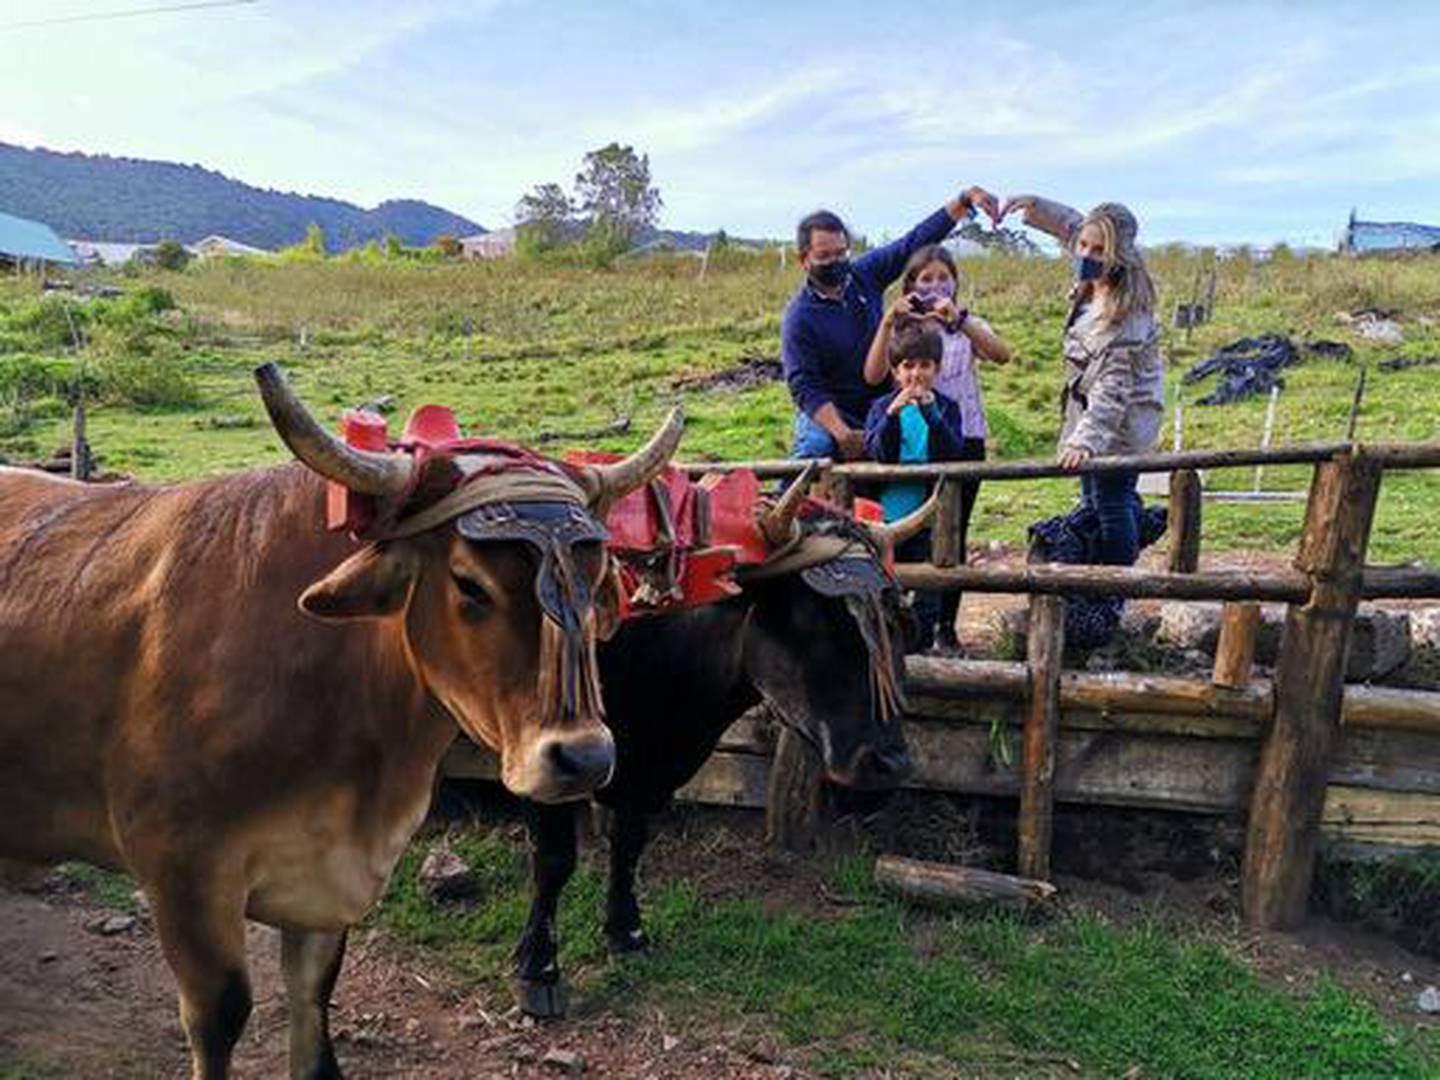 En Poasito de Alajuela existe el primer tour de fresas guiado en Costa Rica y además para el hacer la experiencia más puras tejas es posible montarse en una carreta típica jalada por bueyes. Según el guía de turismo certificado por el ICT, agricultor, turistólogo y propietario y desarrollador de este tour, Eliécer Víquez, el Tour de Fresas permite una experiencia completa a los turistas nacionales o extranjeros